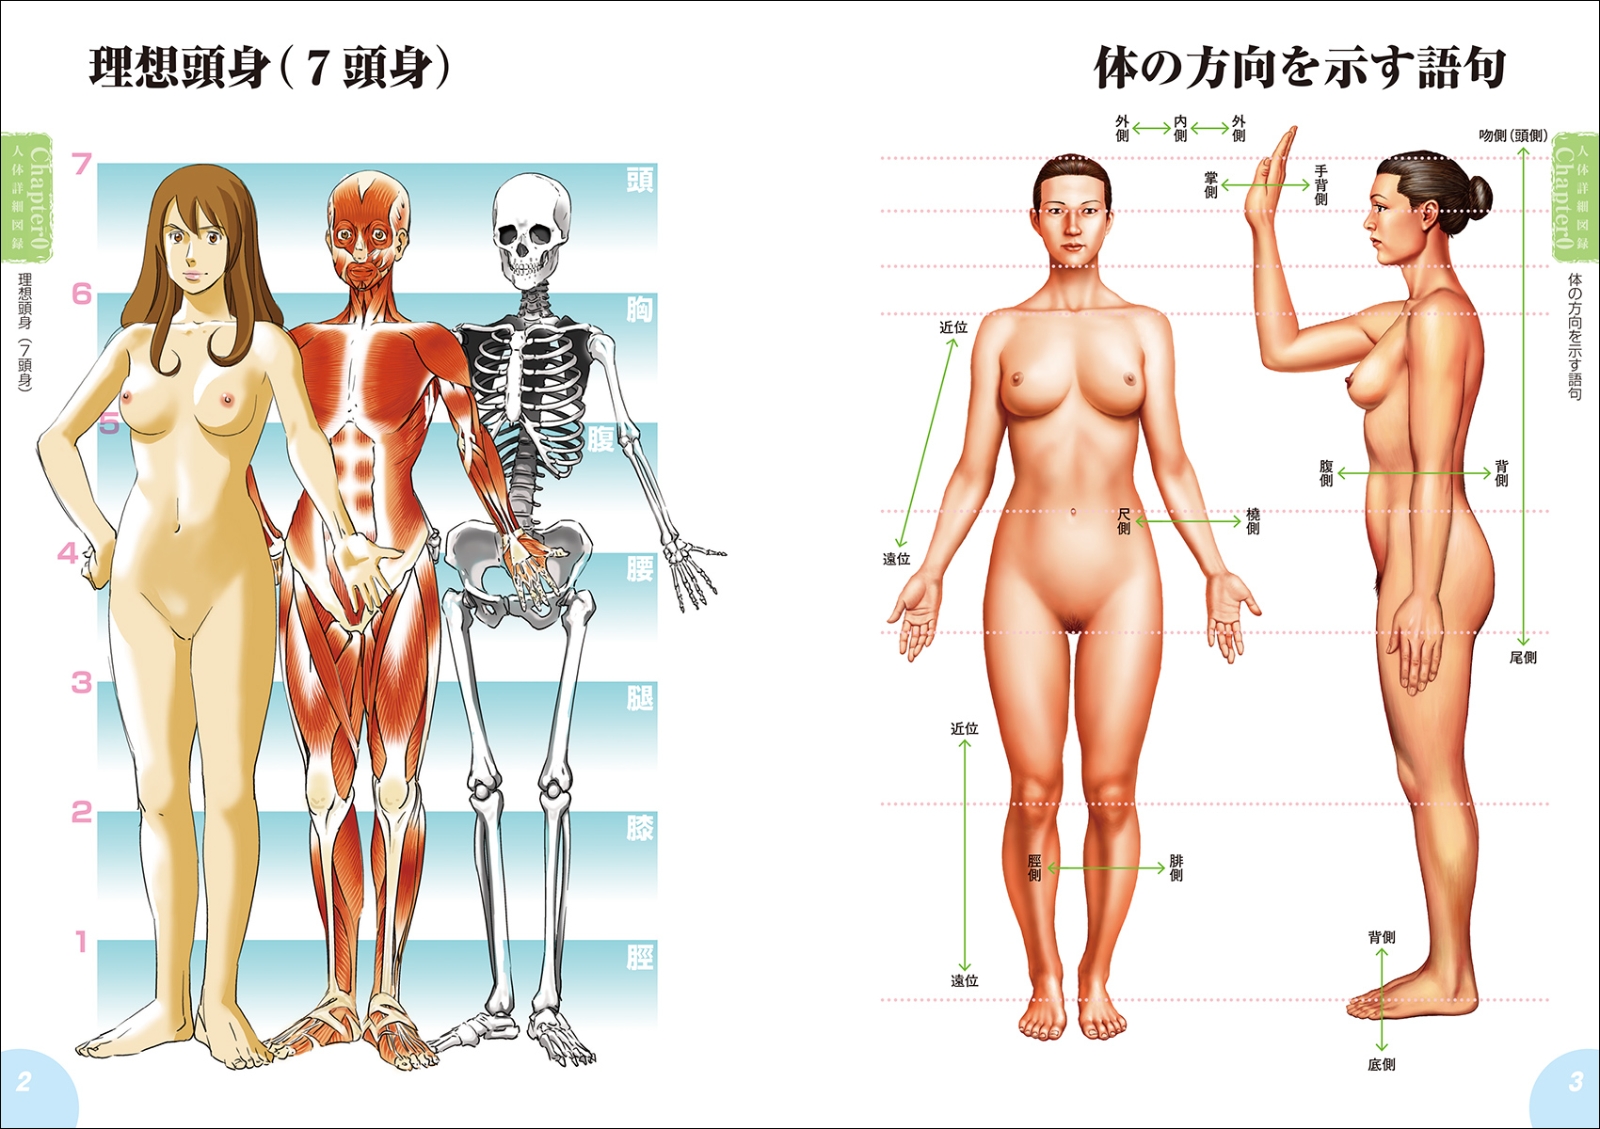 楽天ブックス 新版 人体解剖図から学ぶキャラクターデッサンの描き方 筋肉 骨格 内臓の構造を知ることで より自然な人体画が描ける 岩崎 こたろう 本